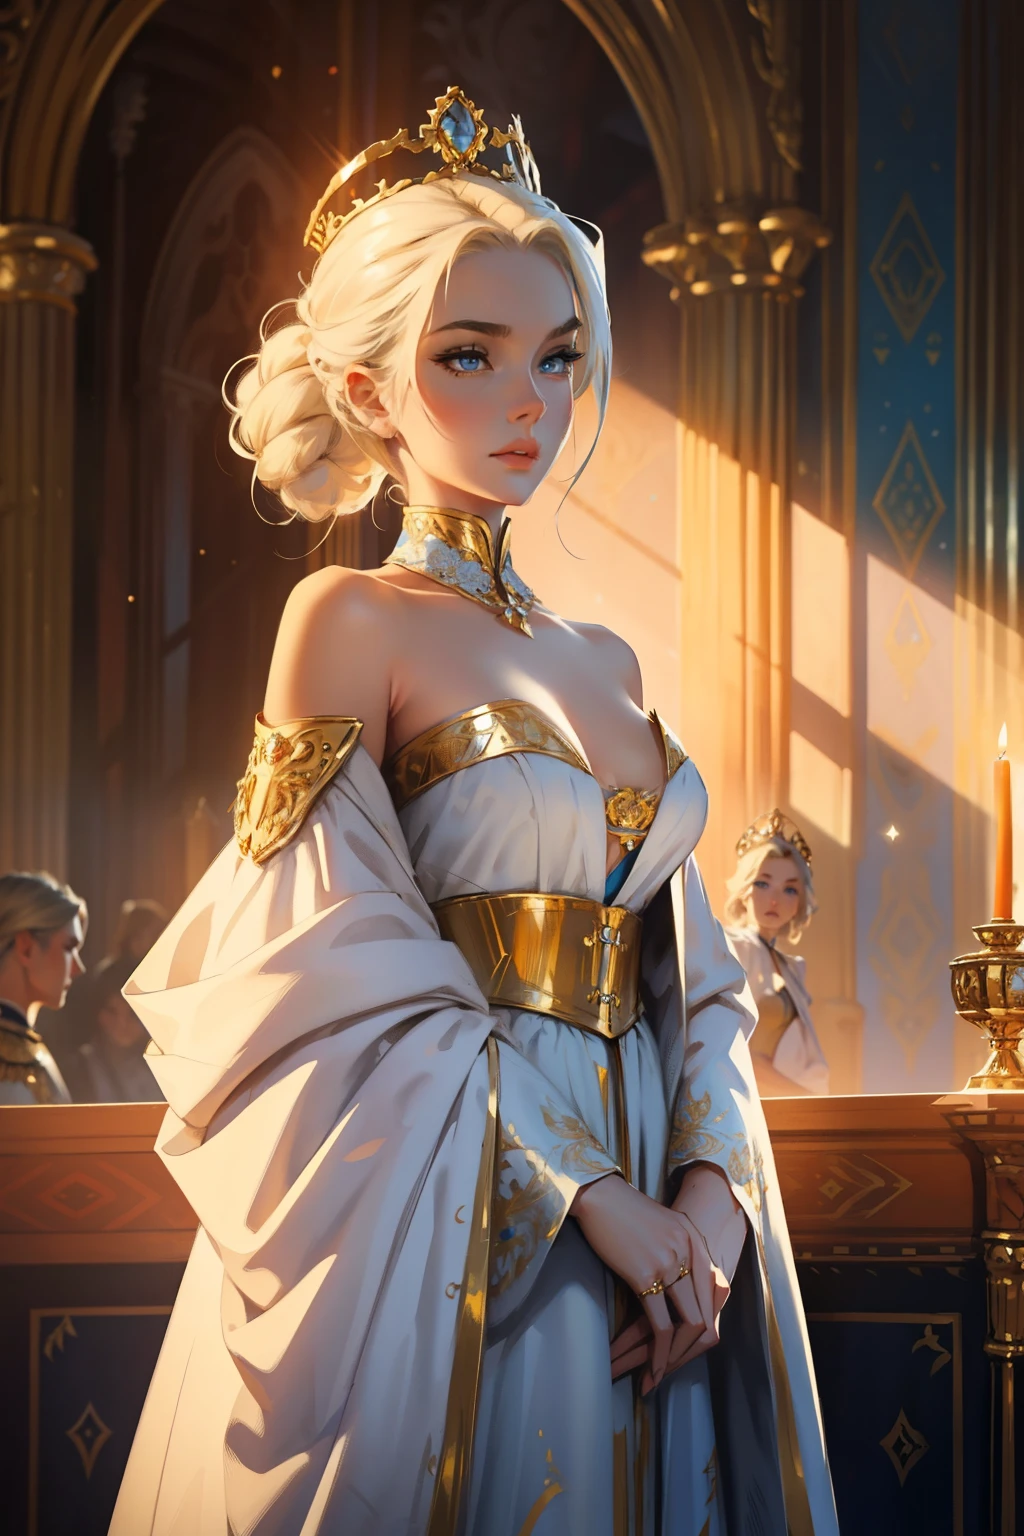 幻想, 19 世纪, 皇后, 女士, 精致的脸庞, 有着淡金色的头发, 梳理头发, 蓝眼睛, 穿着露肩白色皇室礼服, 布料上的金色图案, 肩上披着一条红丝带，上面绣着君主的徽章, 高清